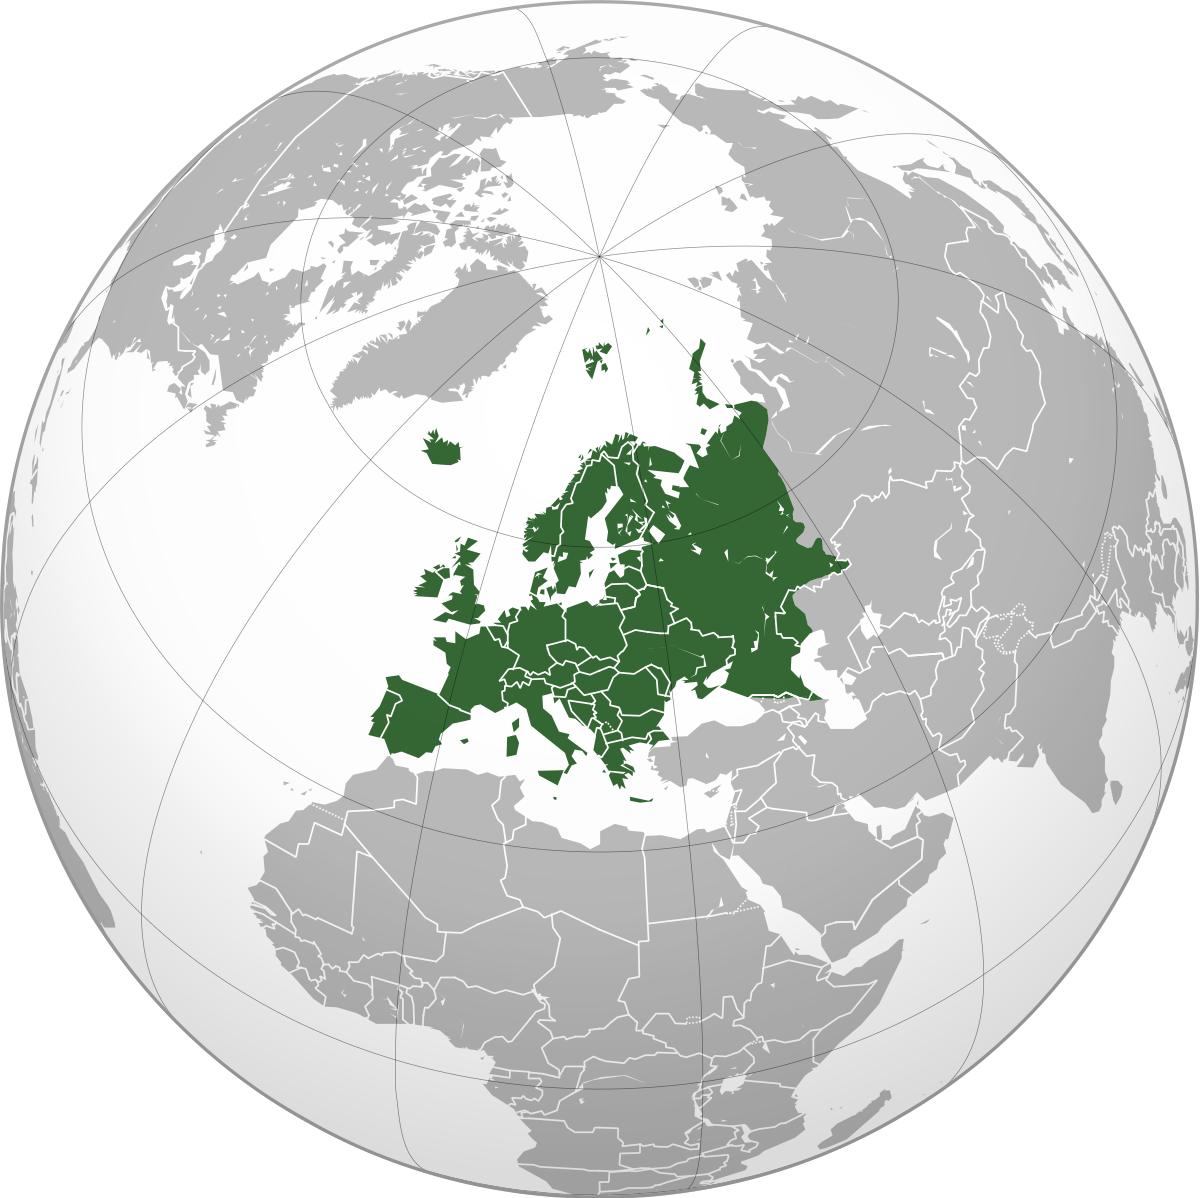 europe carte monde